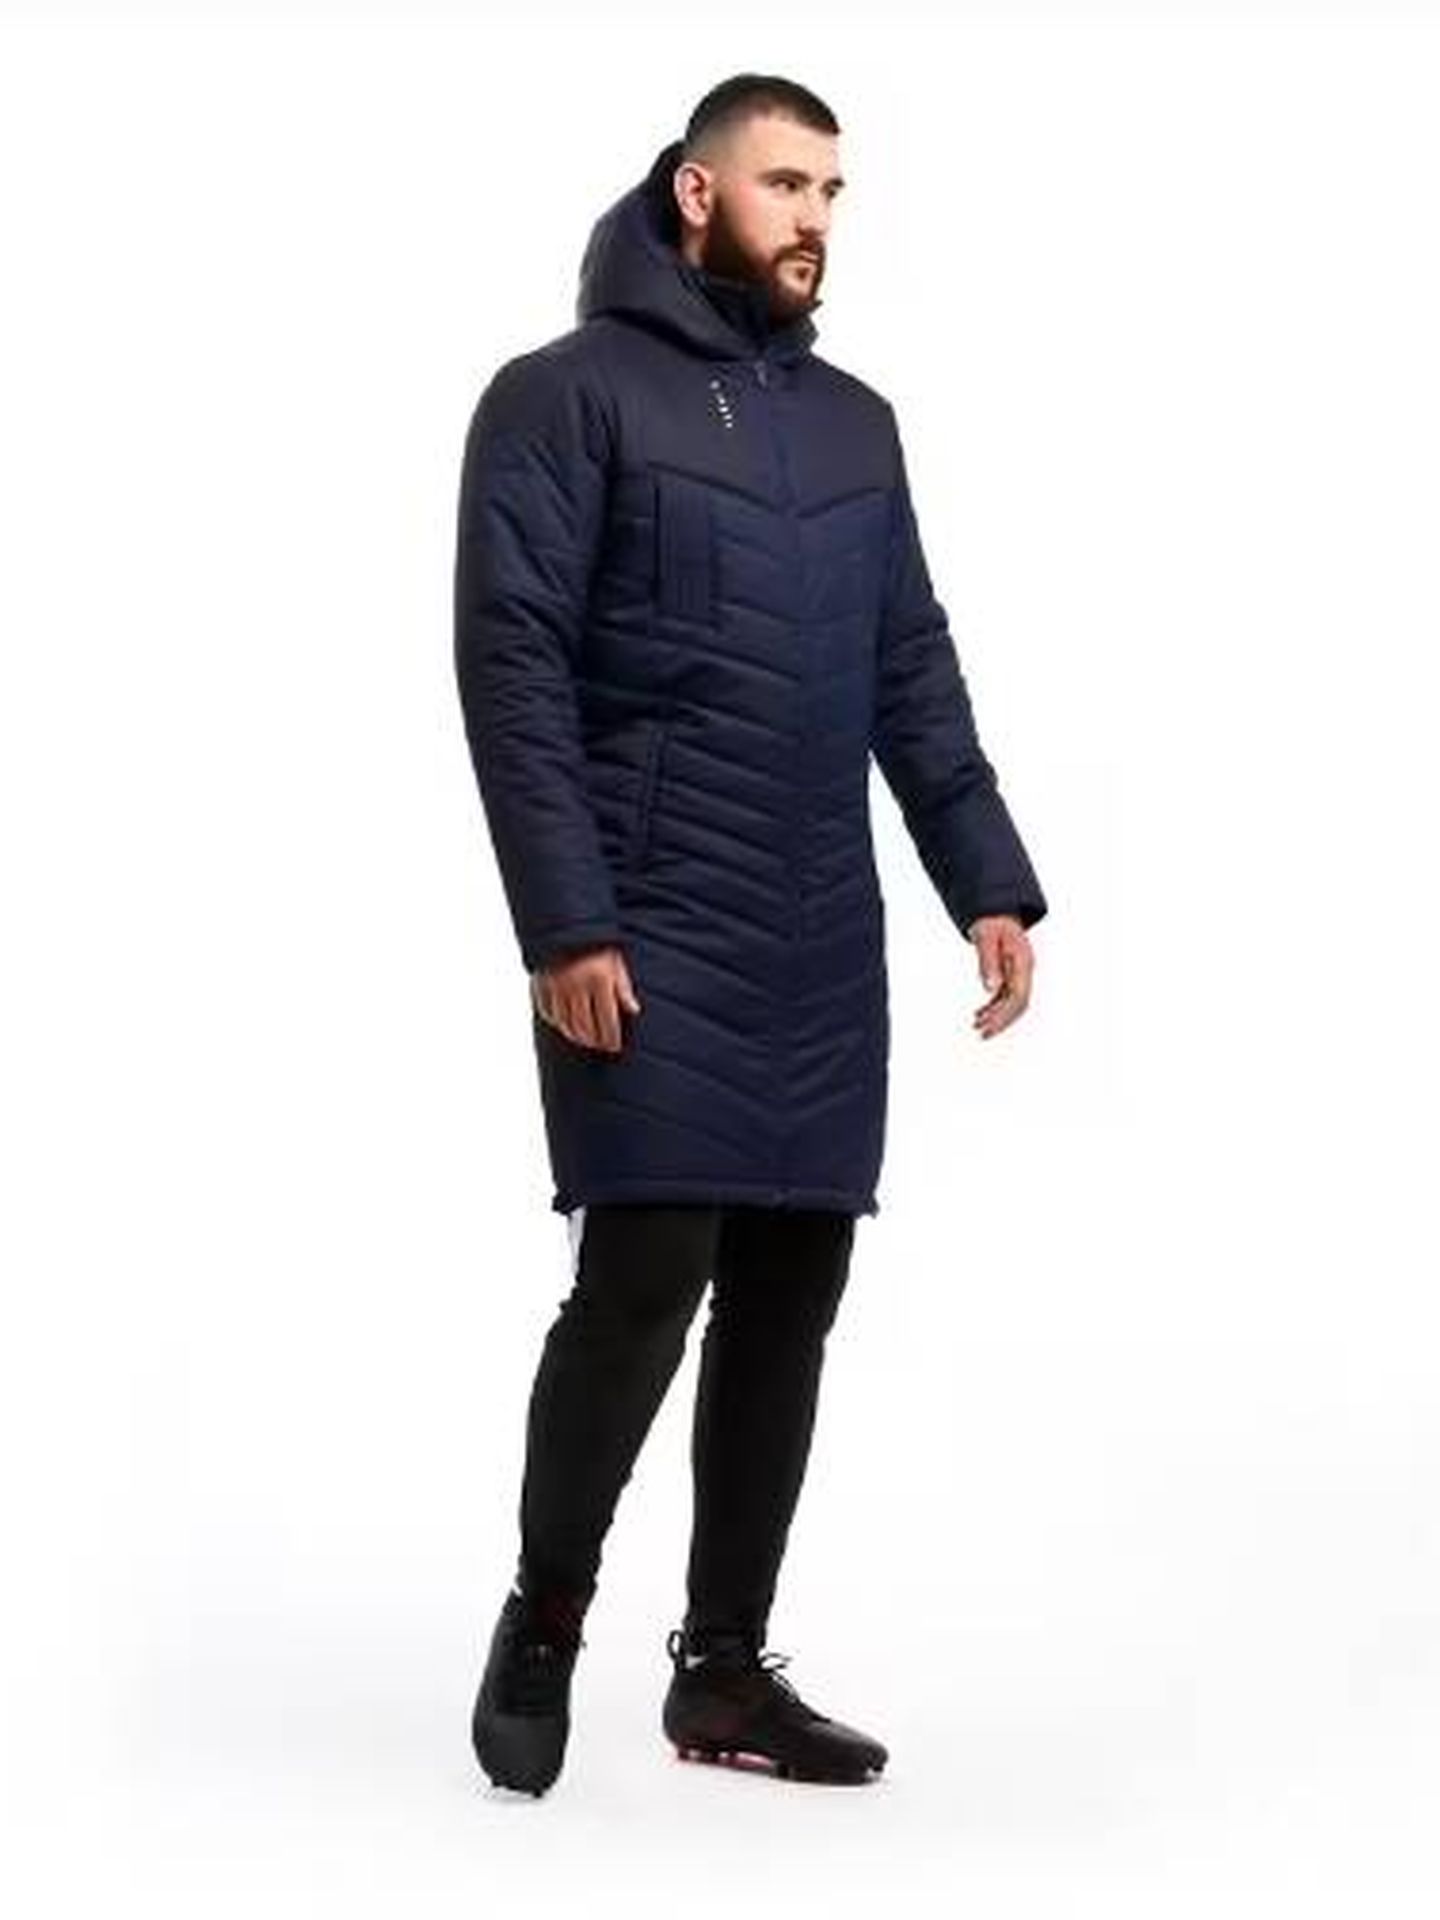 Encontramos el chaquetón de Joma de 50 euros que ha llevado Pedro Sánchez a  Davos y se ha hecho viral